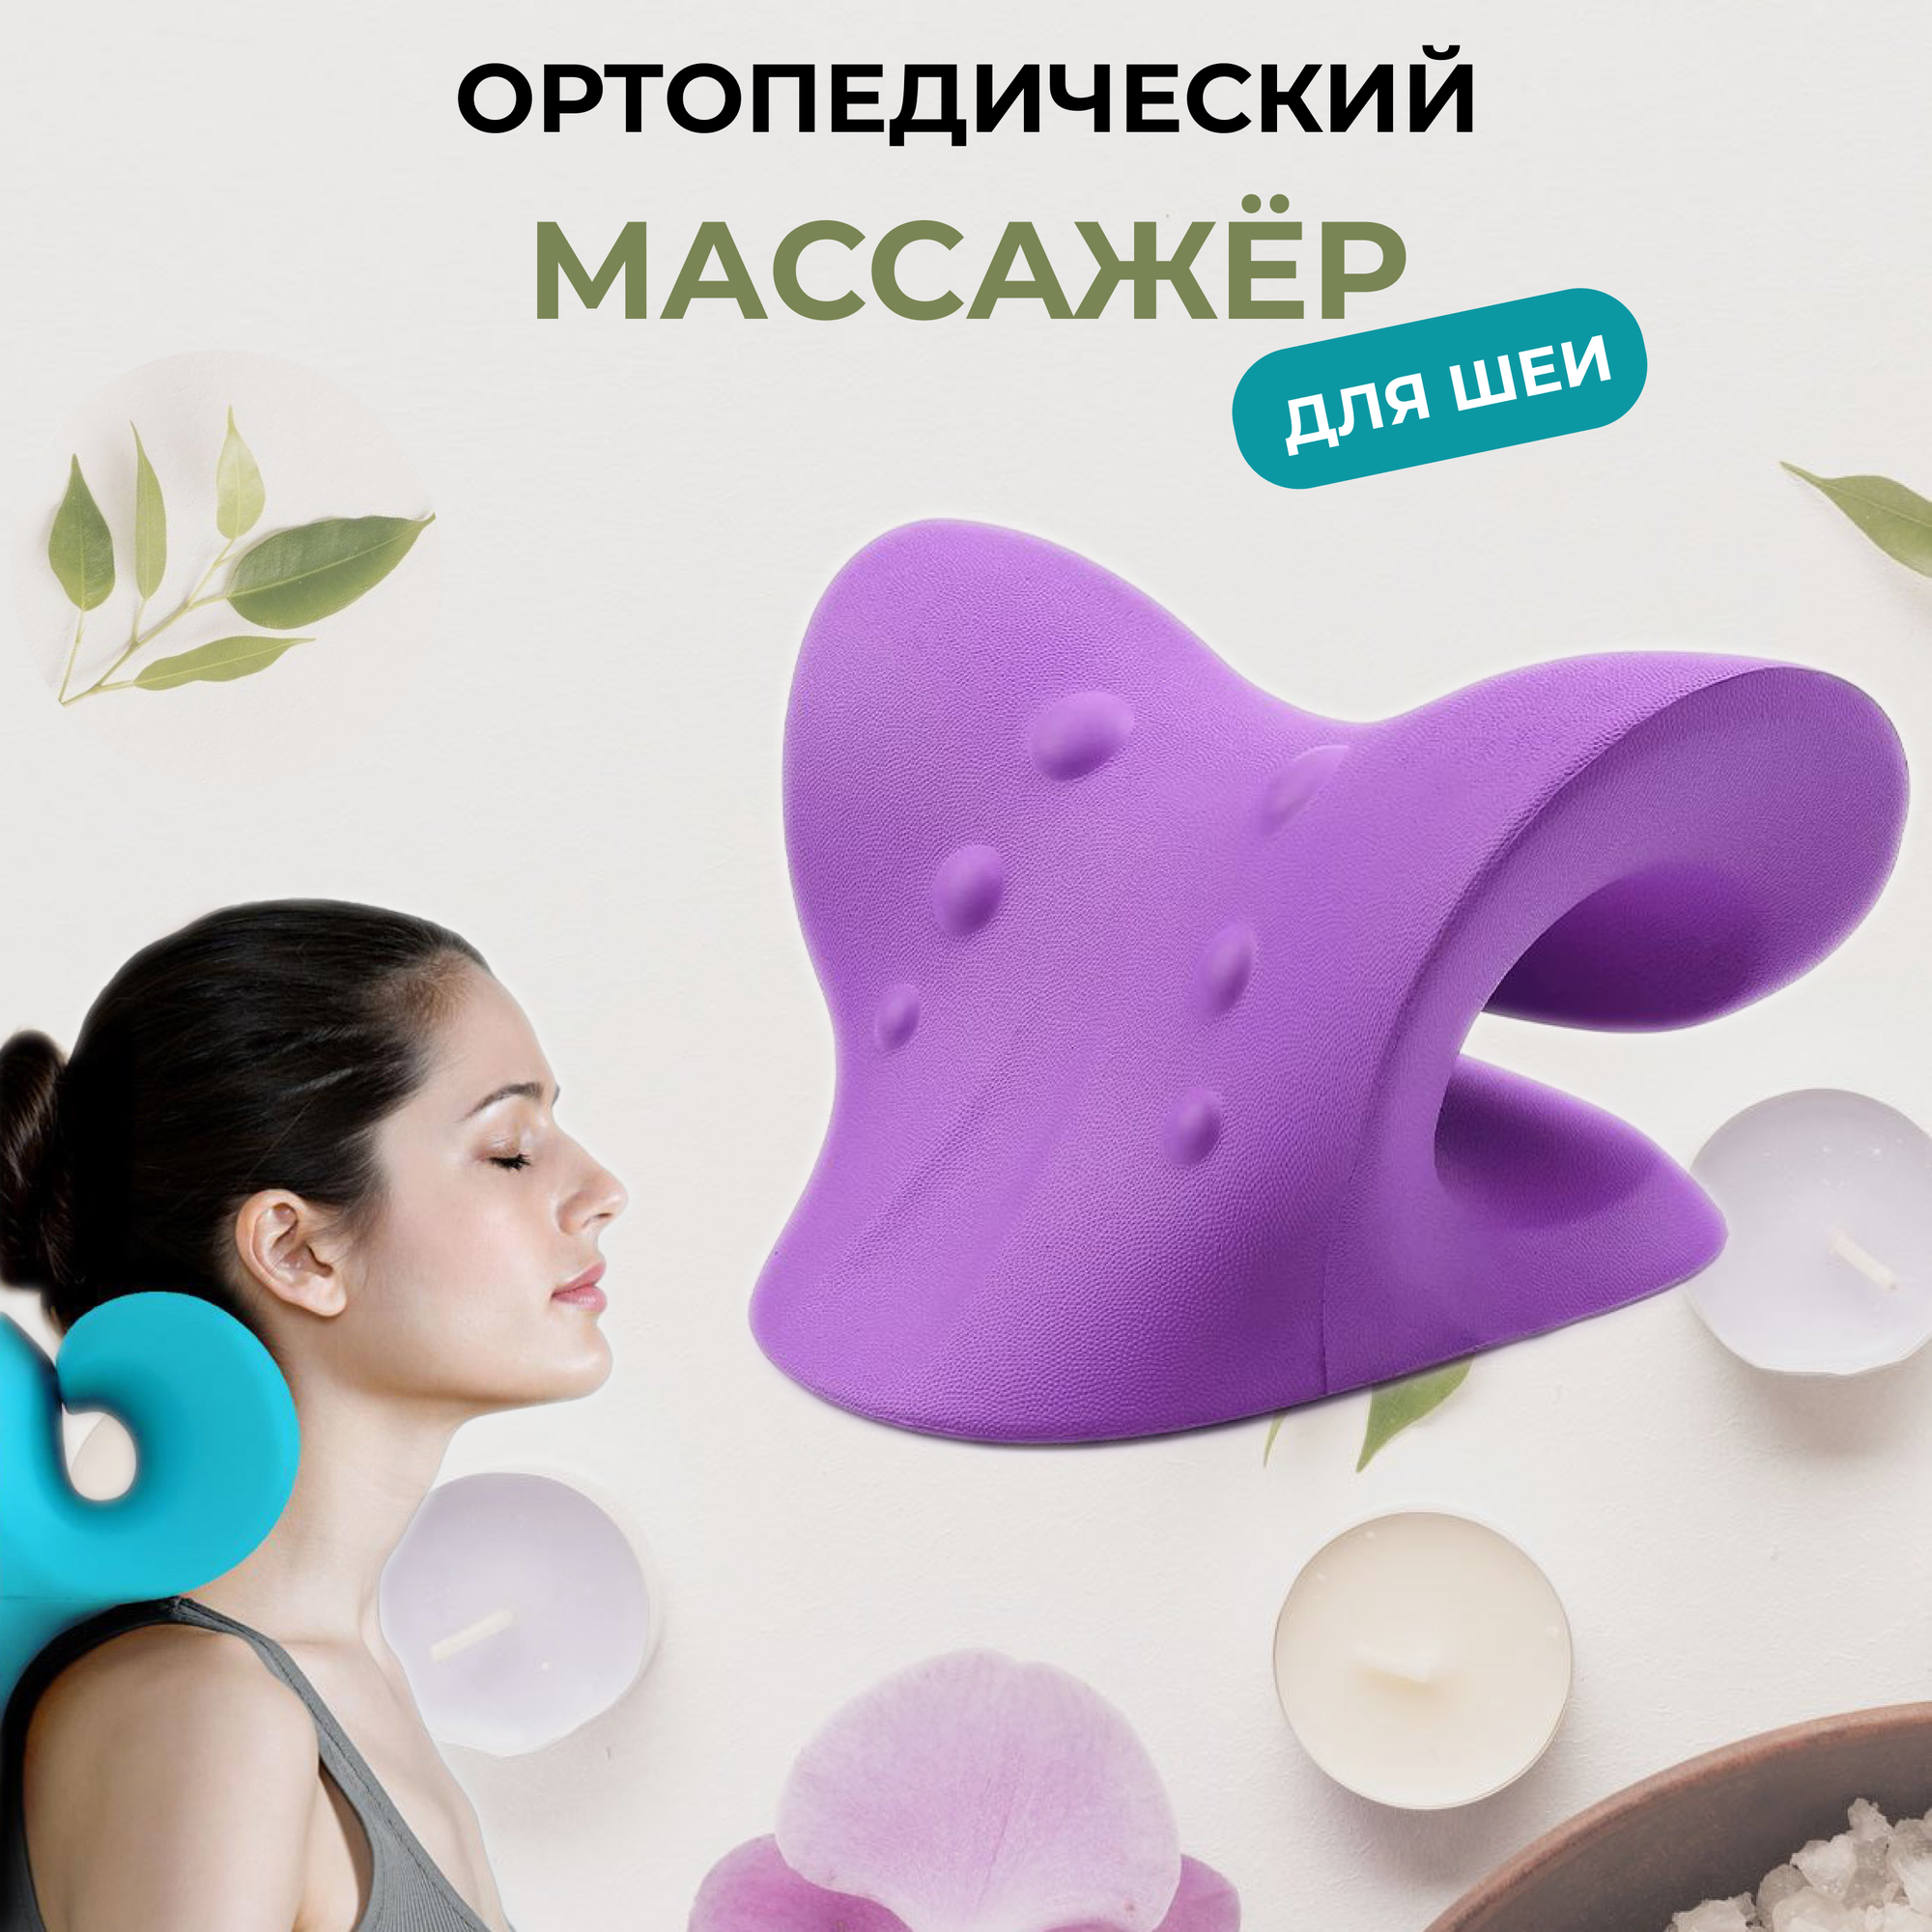 Массажер для шеи "Массажная подушка" фиолетовый цвет